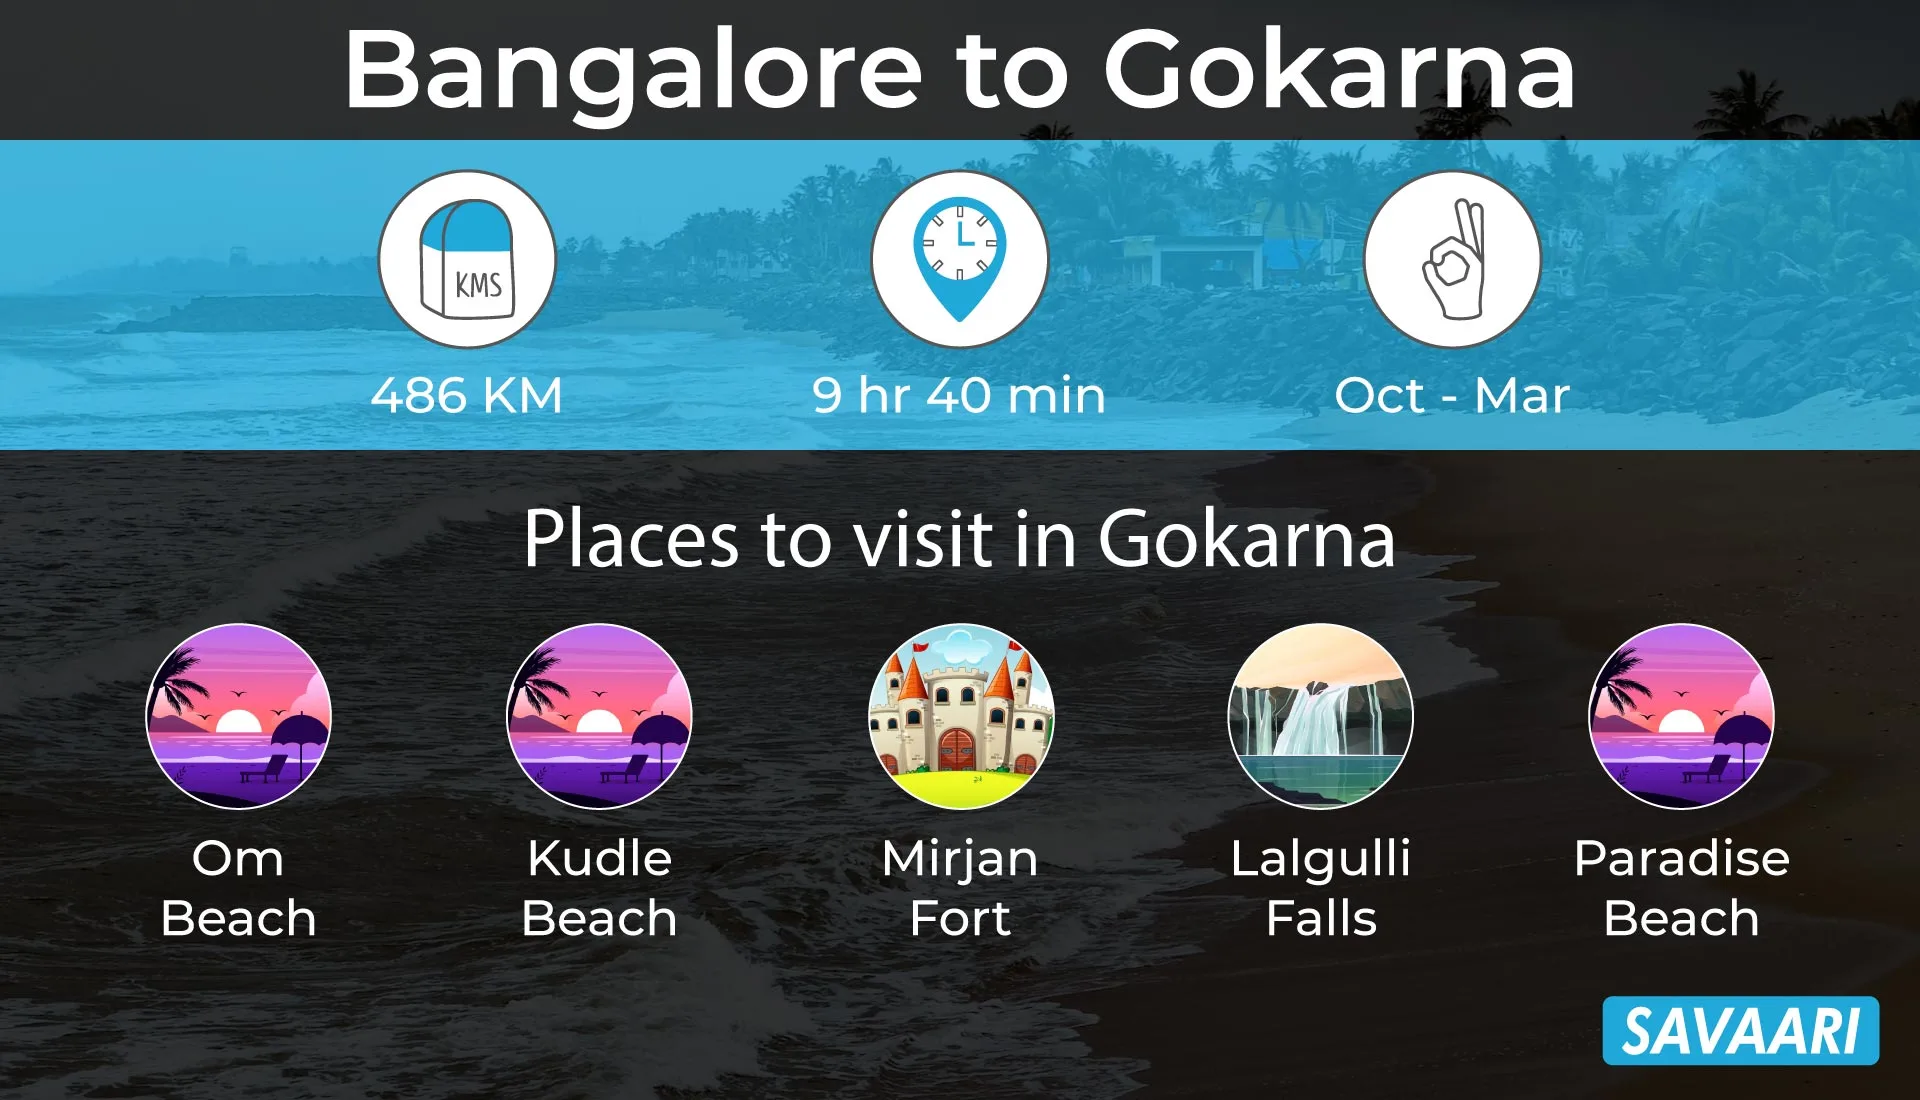 Bangalore to Gokarna by road